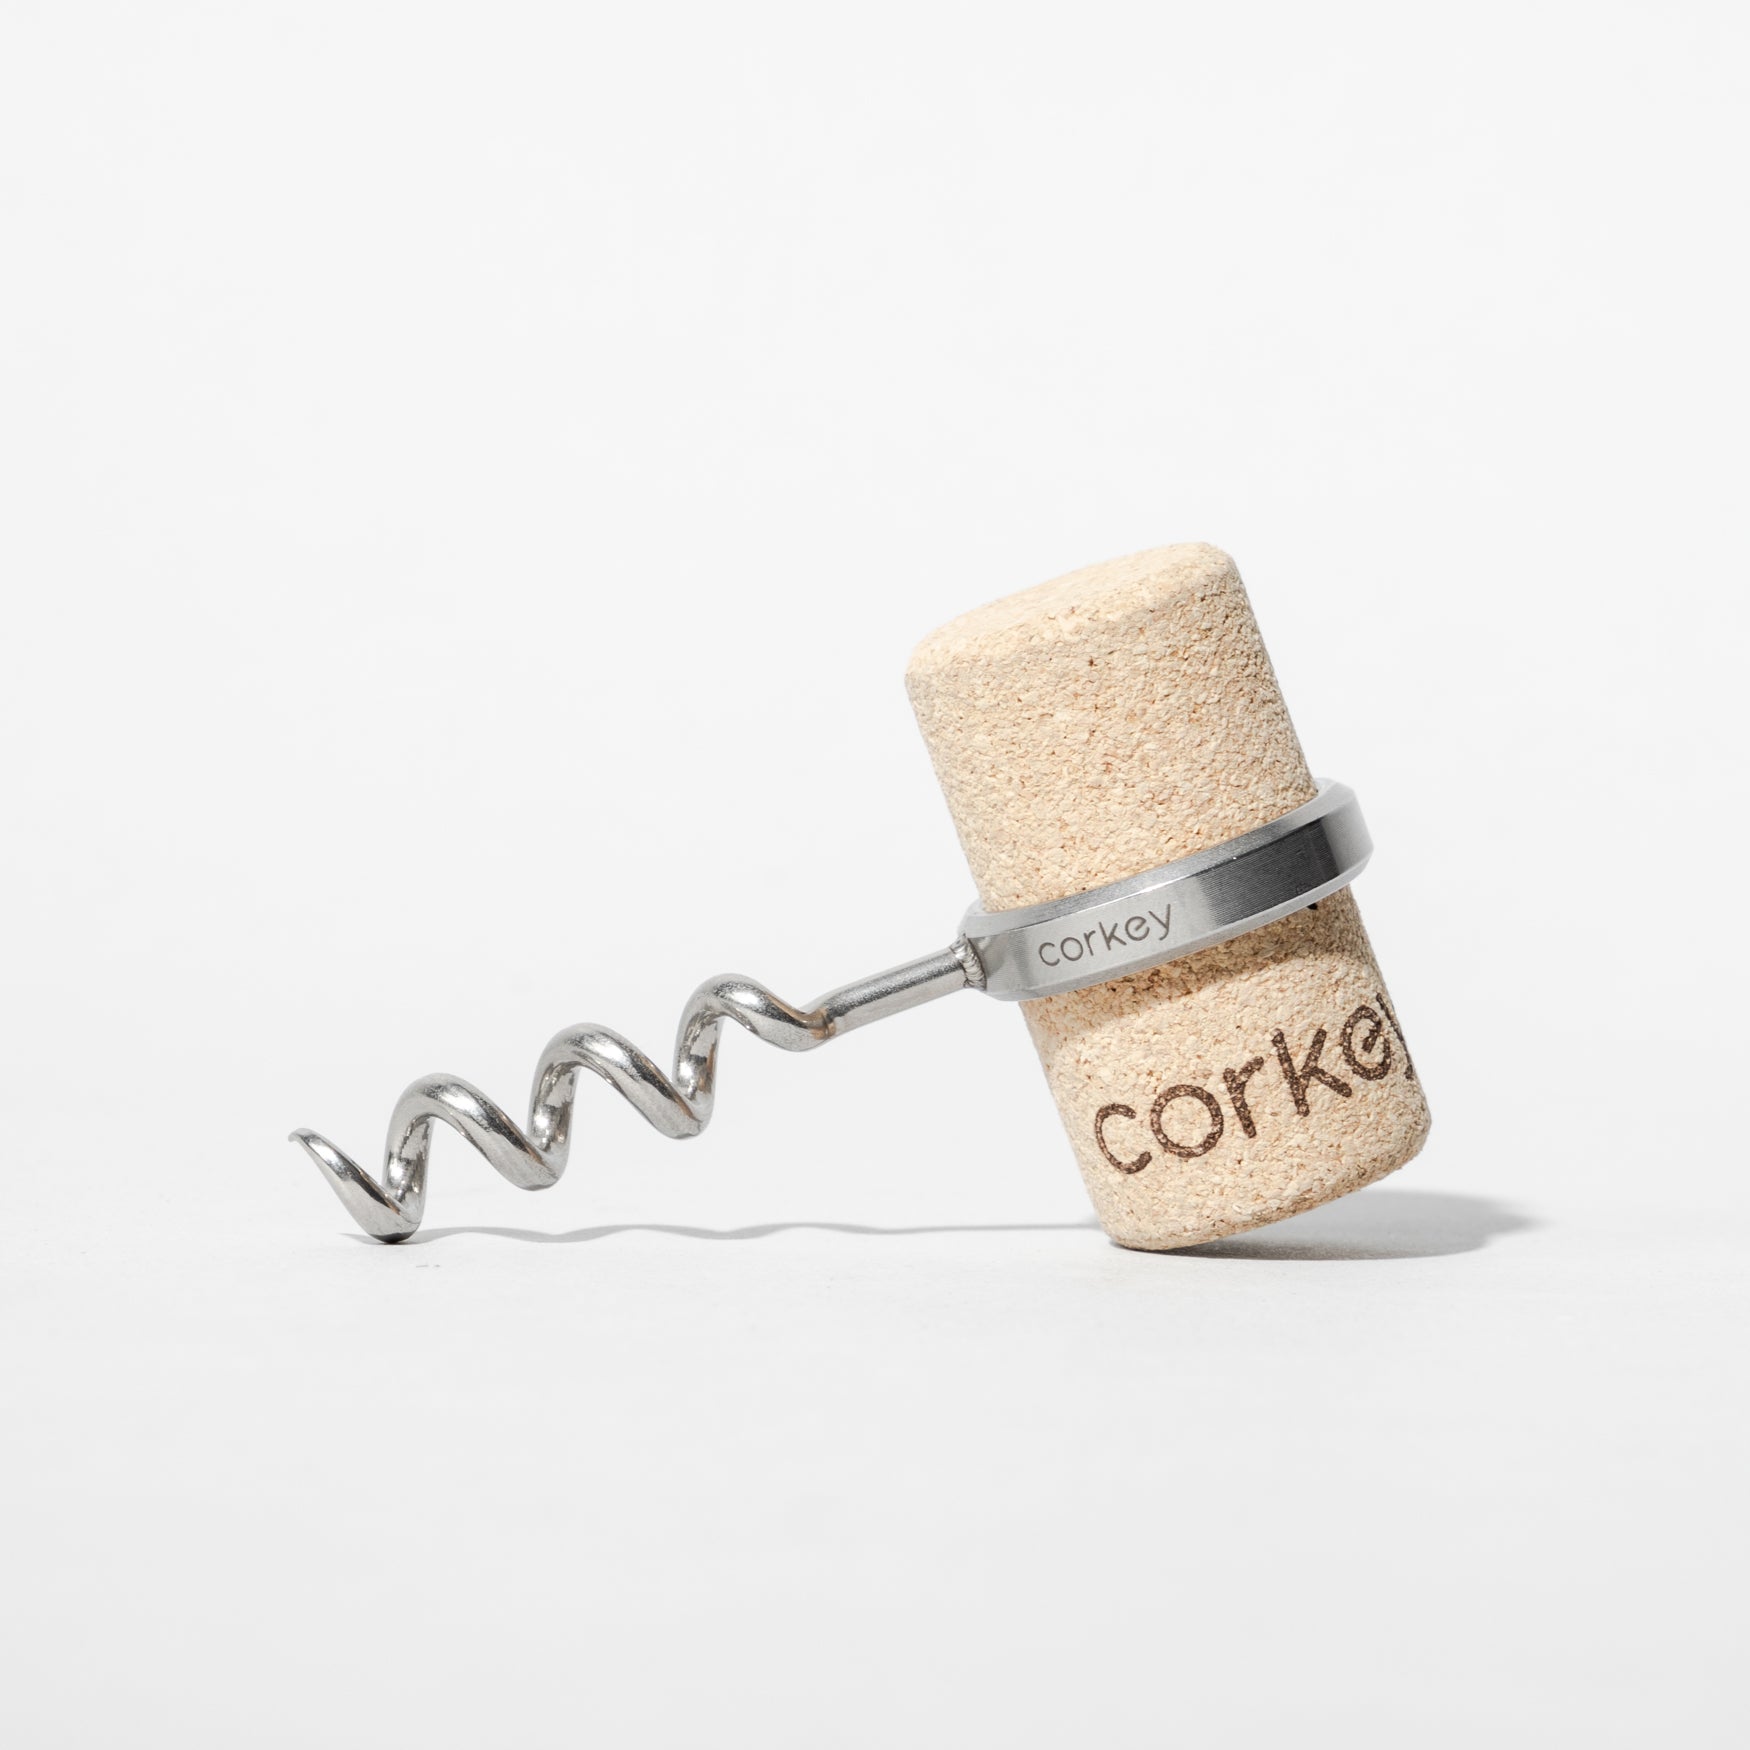 corkey – Dein Korkenzieher am Schlüsselbund